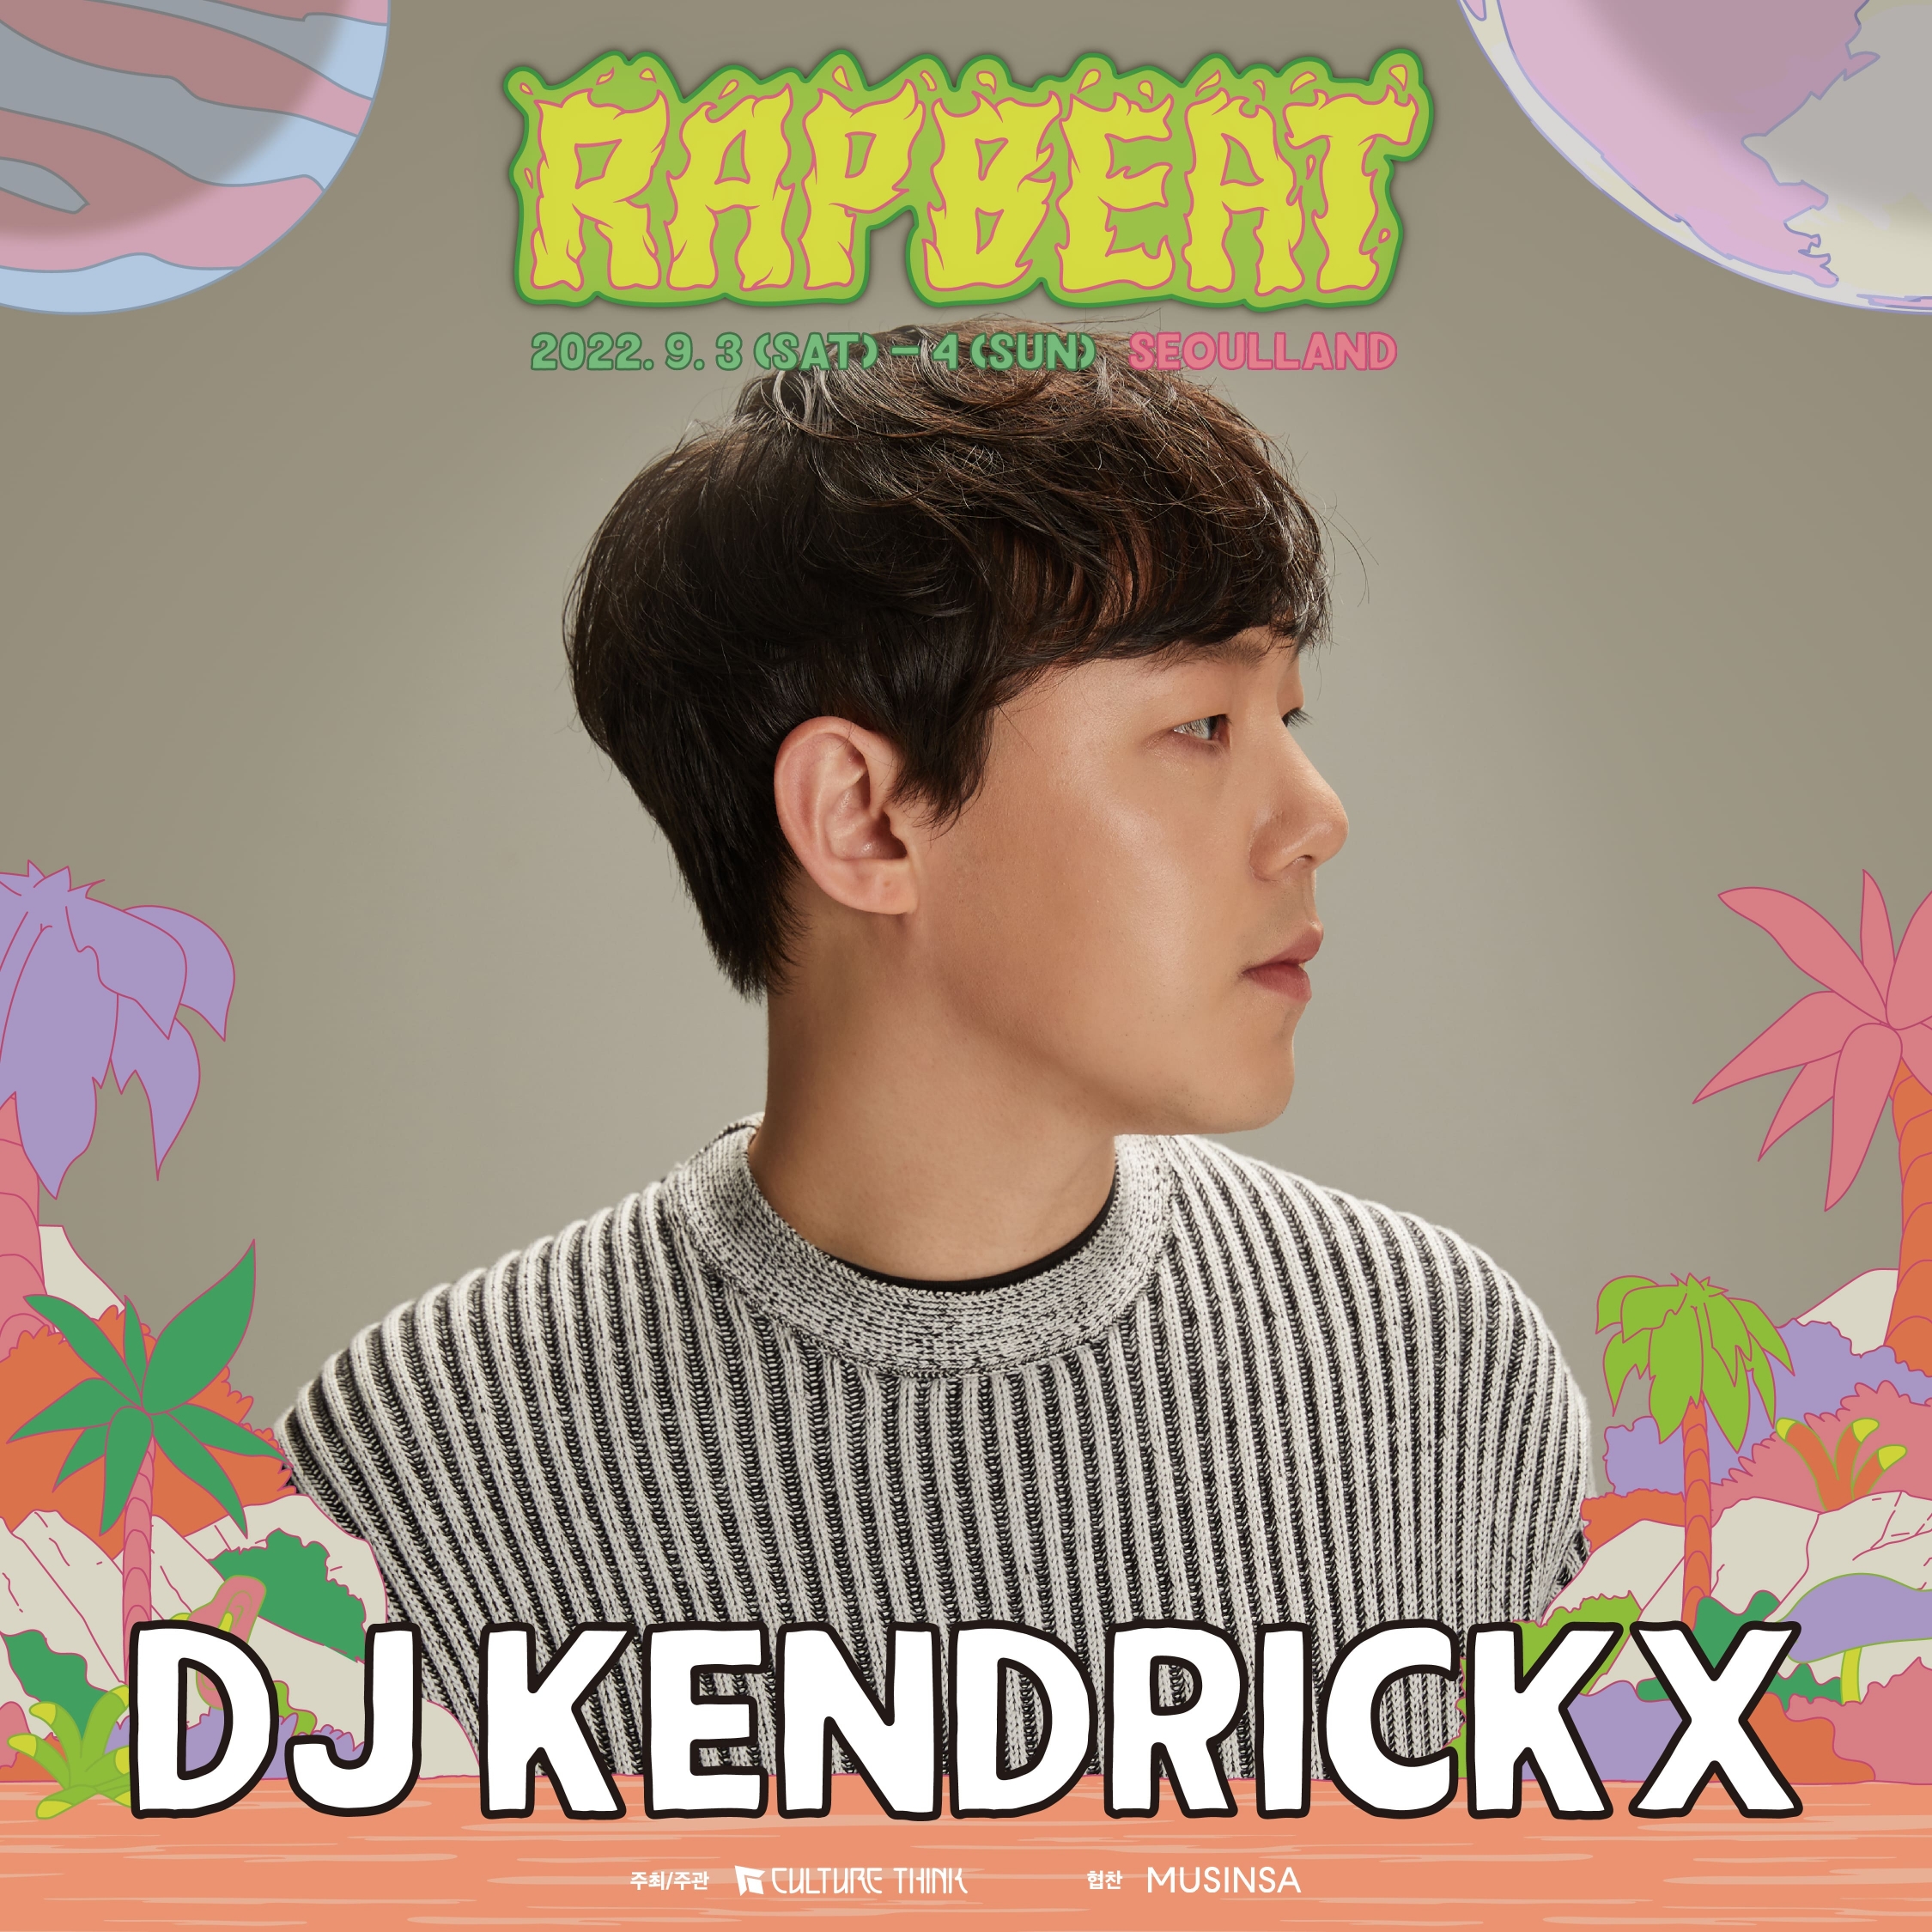 DJ KENDRICKX